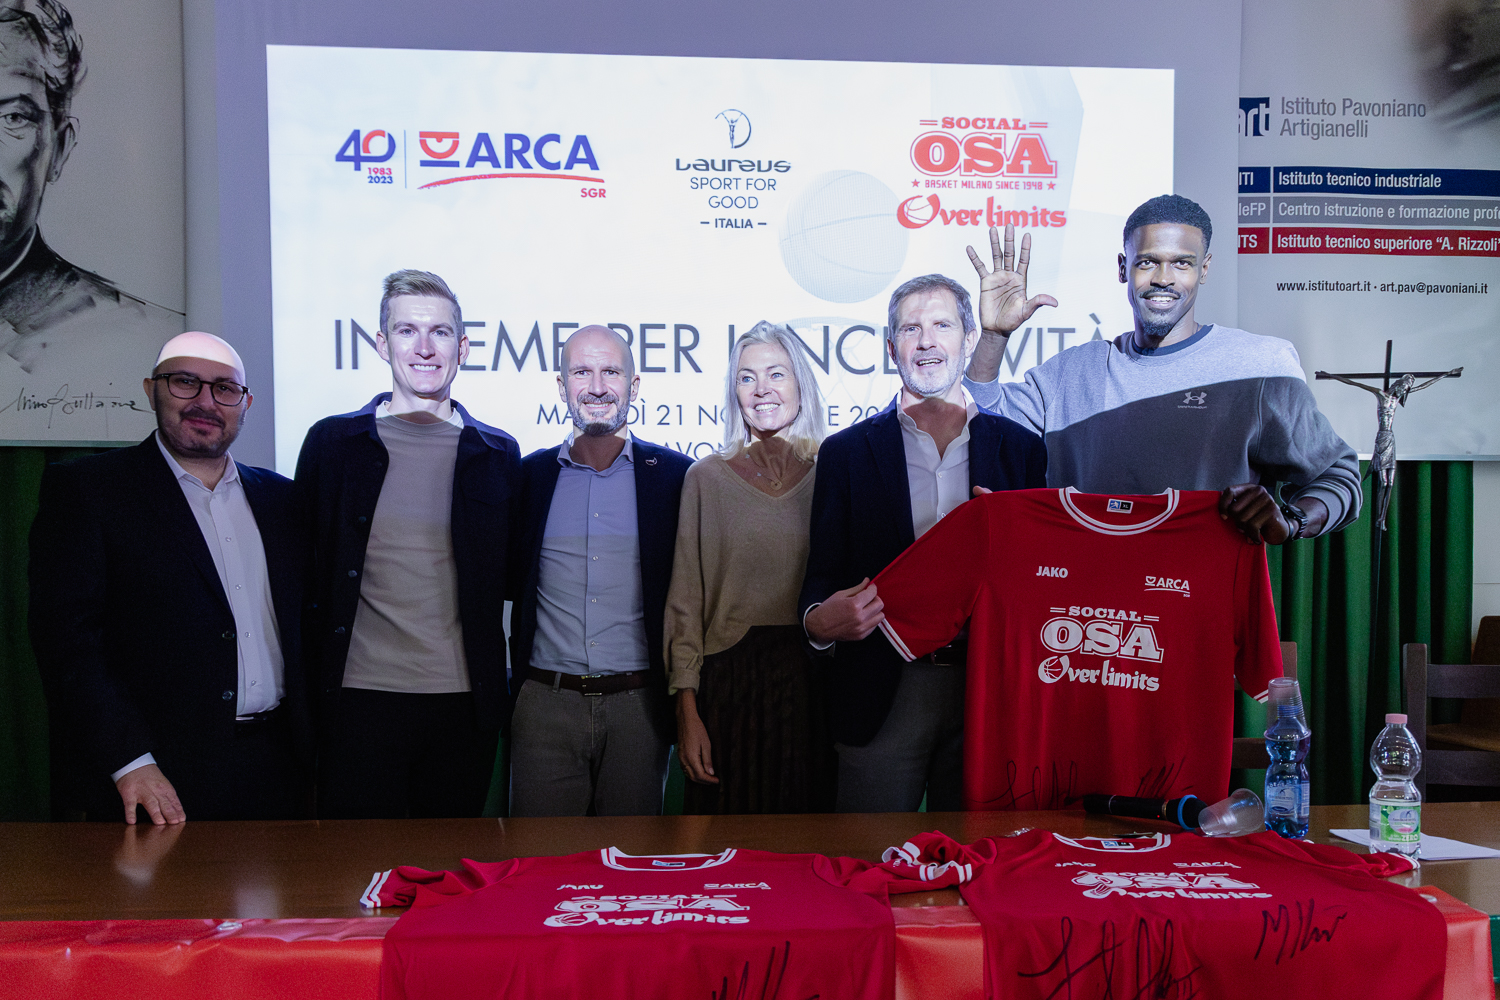 cinque persone sorridenti, davanti a un tavolo con magliette rosse. La persona più a destra mostra una mano aperta 